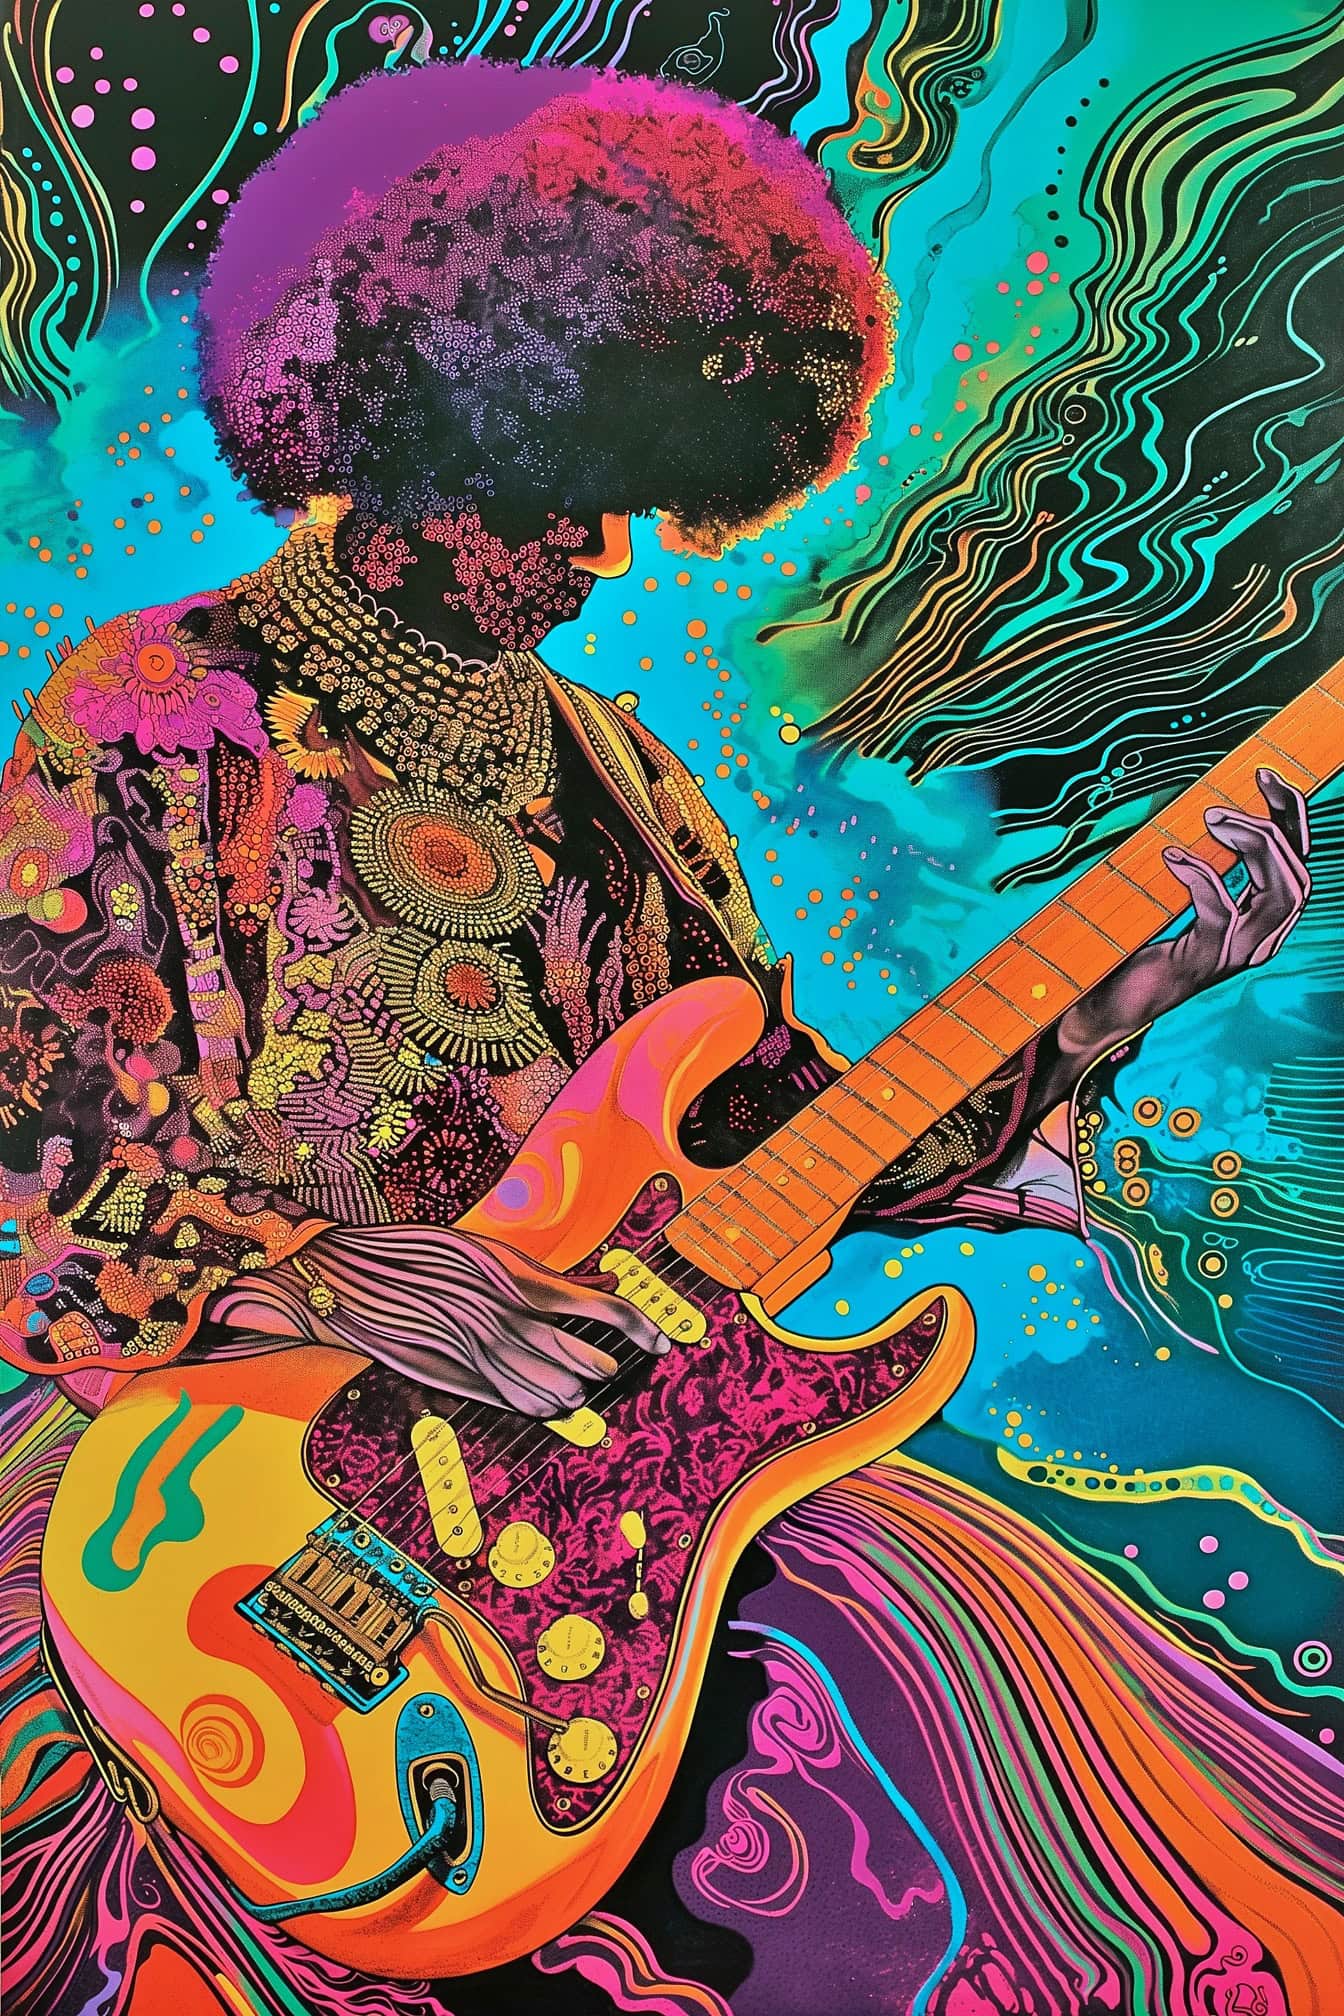 Een hypnotiserende illustratie van Jimi Hendrix die gitaar speelt in een mix van psychedelische en pop-art stijl